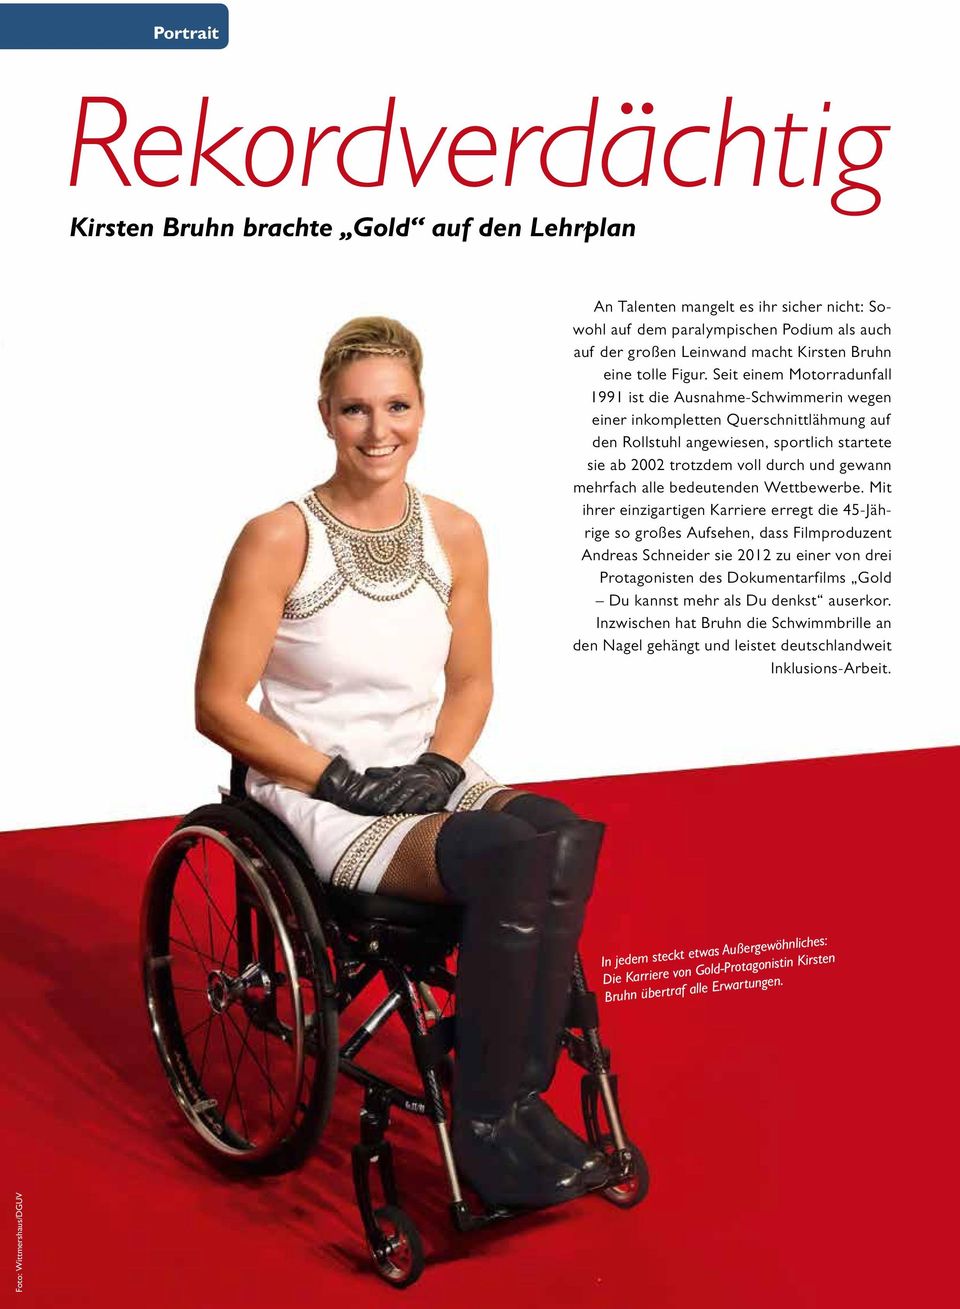 Seit einem Motorradunfall 1991 ist die Ausnahme-Schwimmerin wegen einer inkompletten Querschnittlähmung auf den Rollstuhl angewiesen, sportlich startete sie ab 2002 trotzdem voll durch und gewann